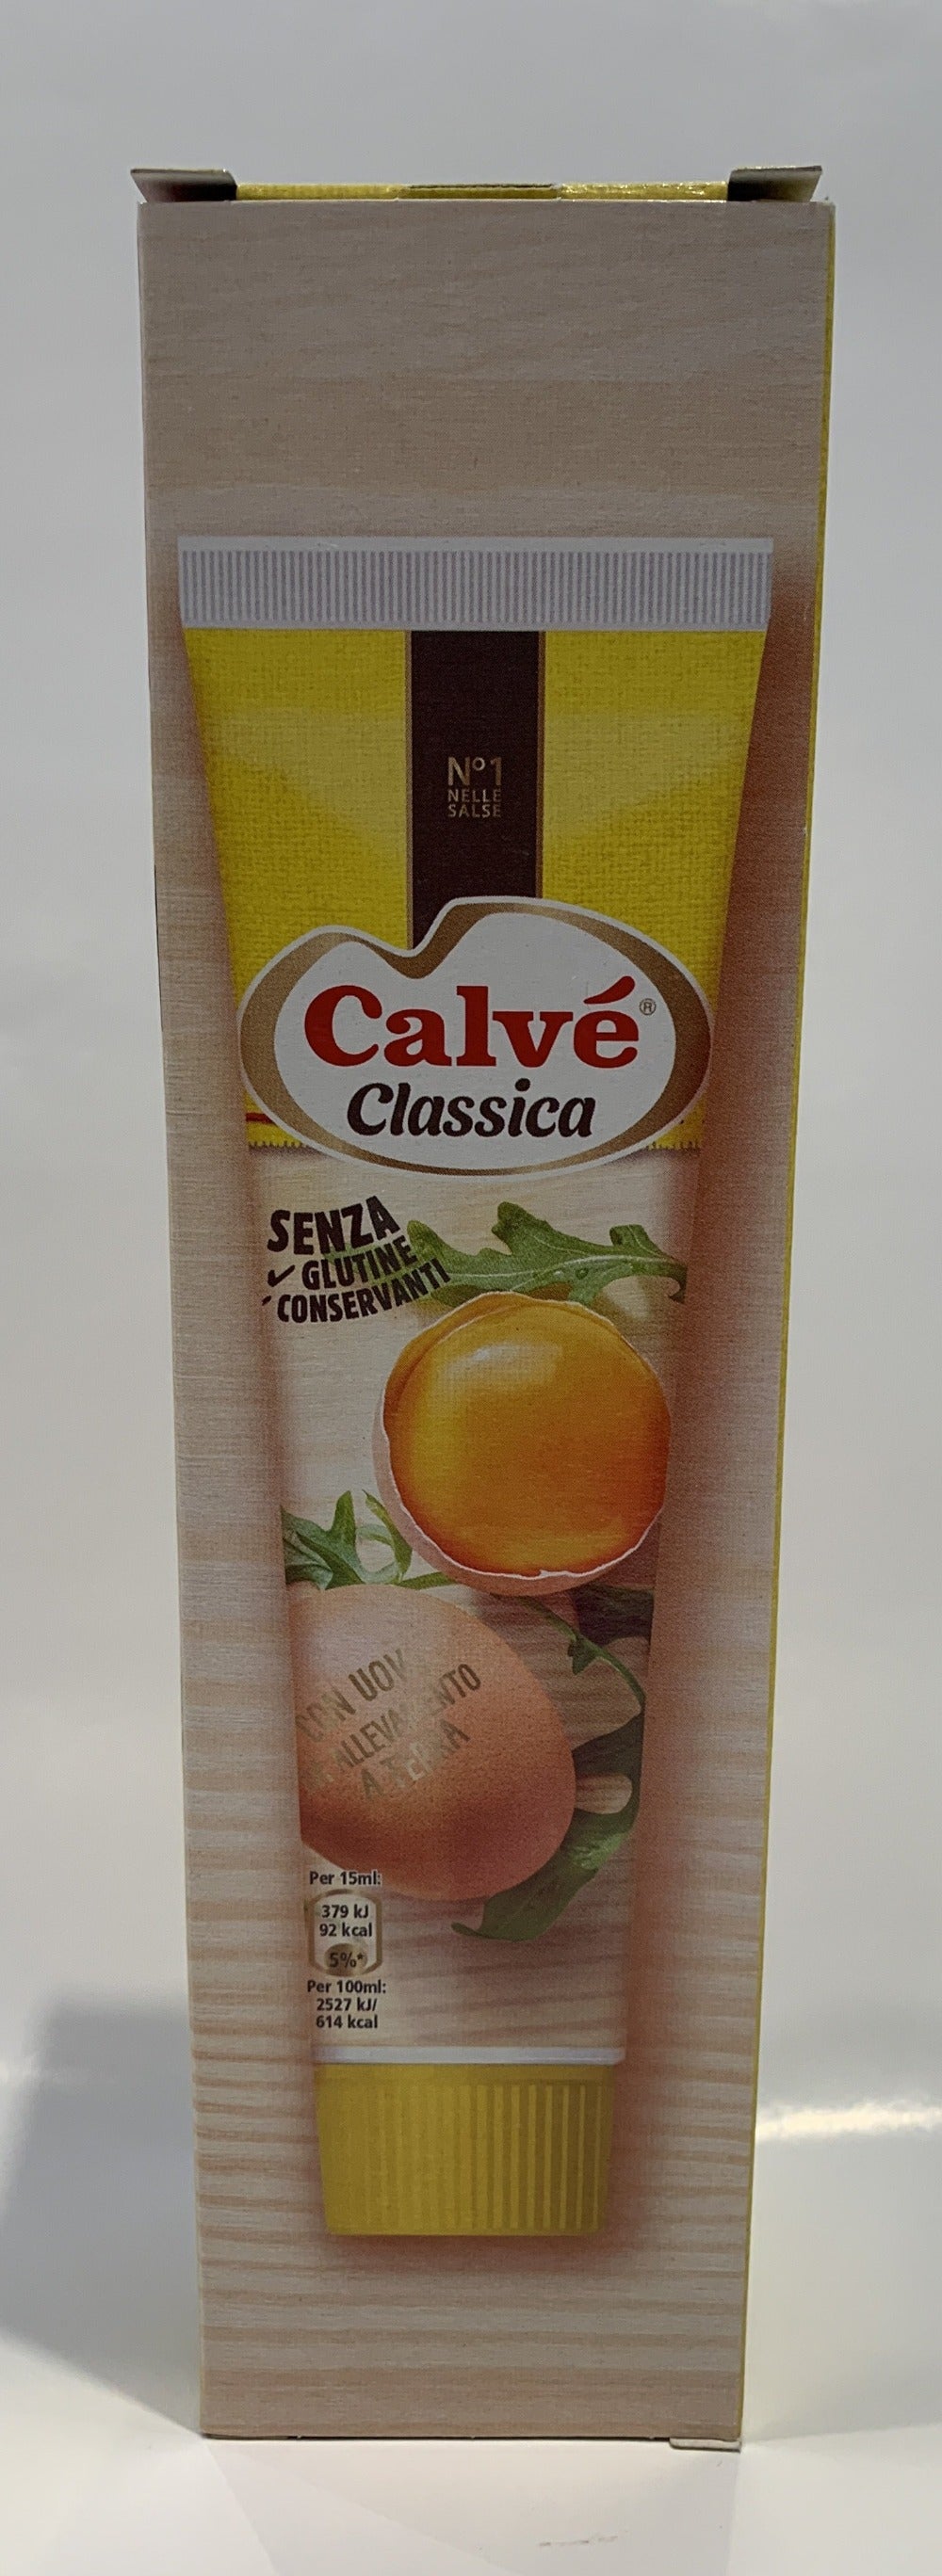 Calve - Classica - Maionese - Senza Glutine -150ml (142g)